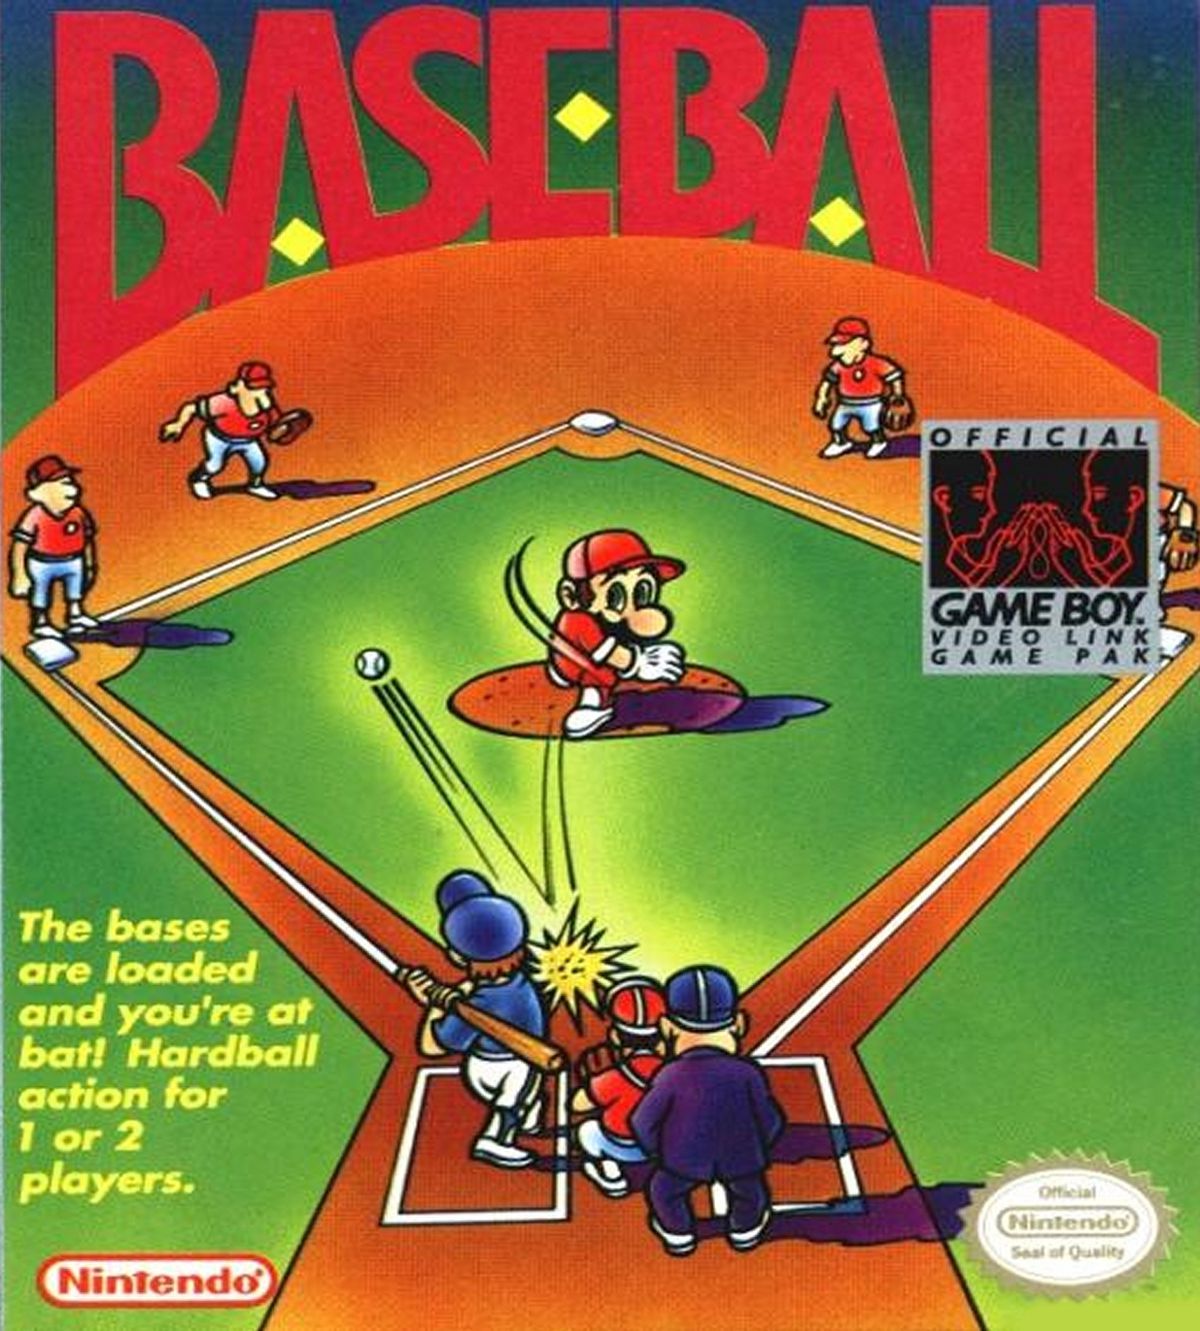 Couverture de la version Game Boy de Baseball, avec une illustration de Mario lançant contre un frappeur qui a frappé une balle vers le champ gauche